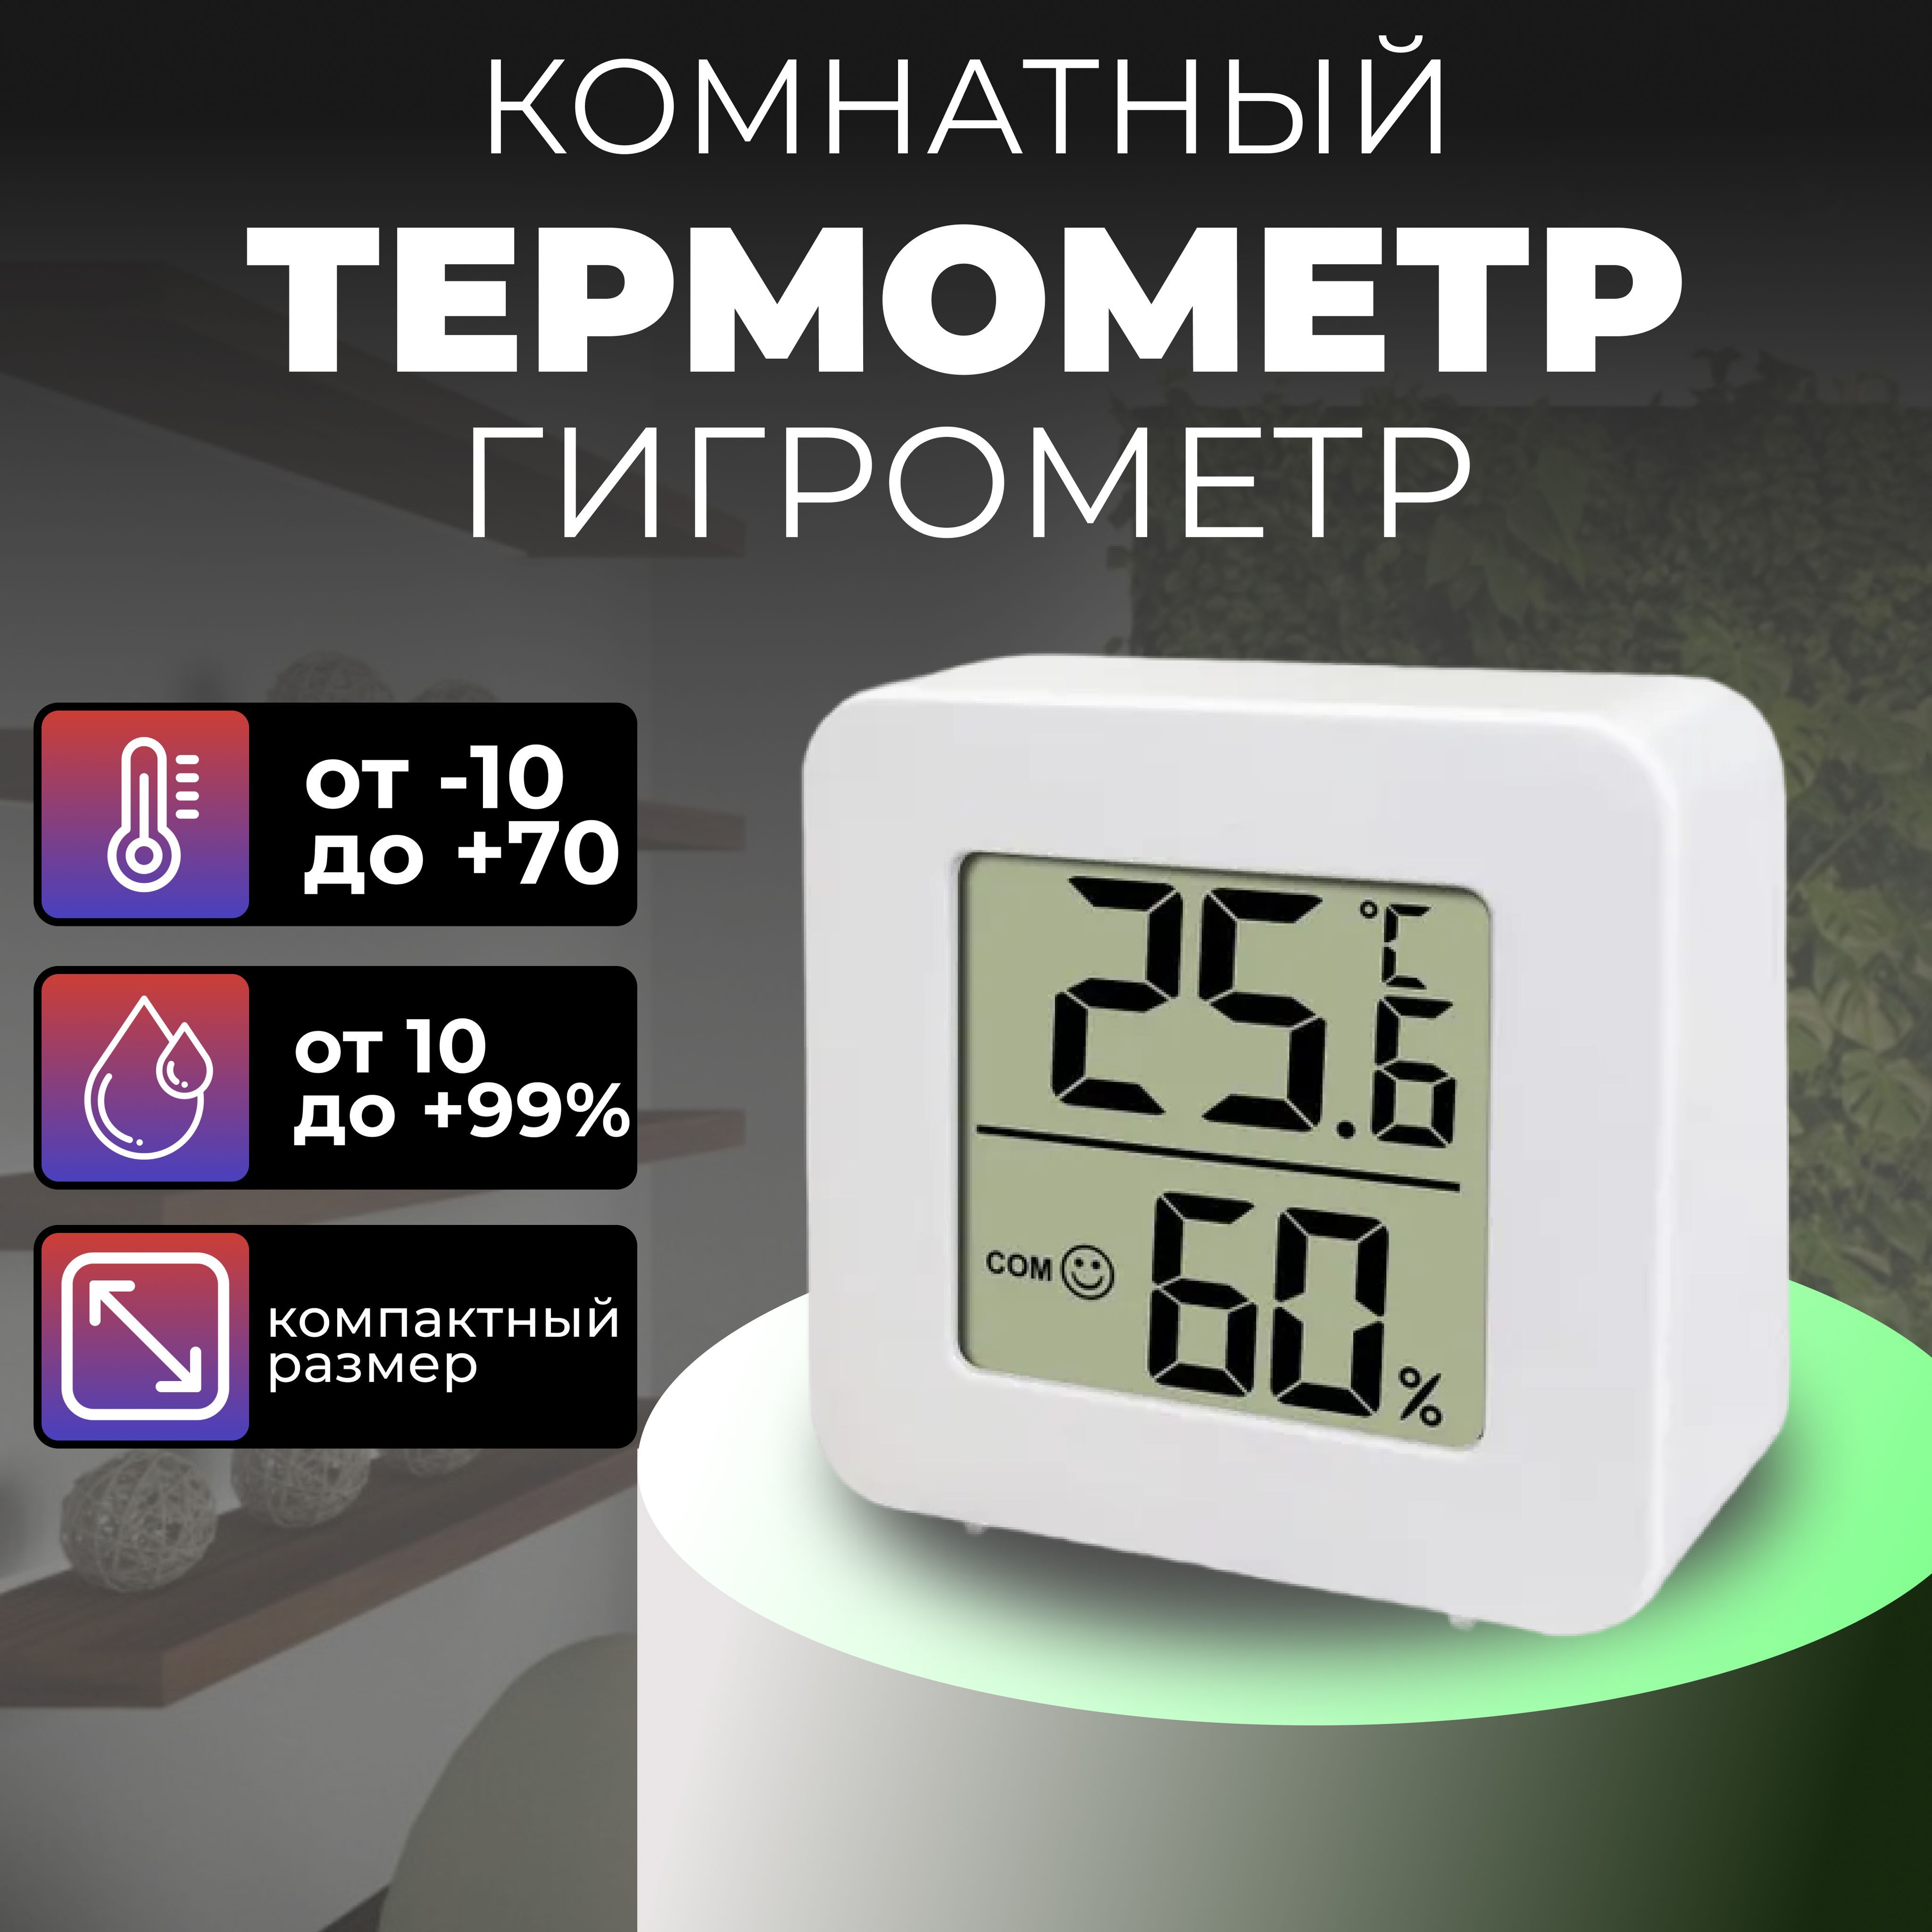 Термометр воздуха в квартире. Термометр для воздуха в помещении электронный.